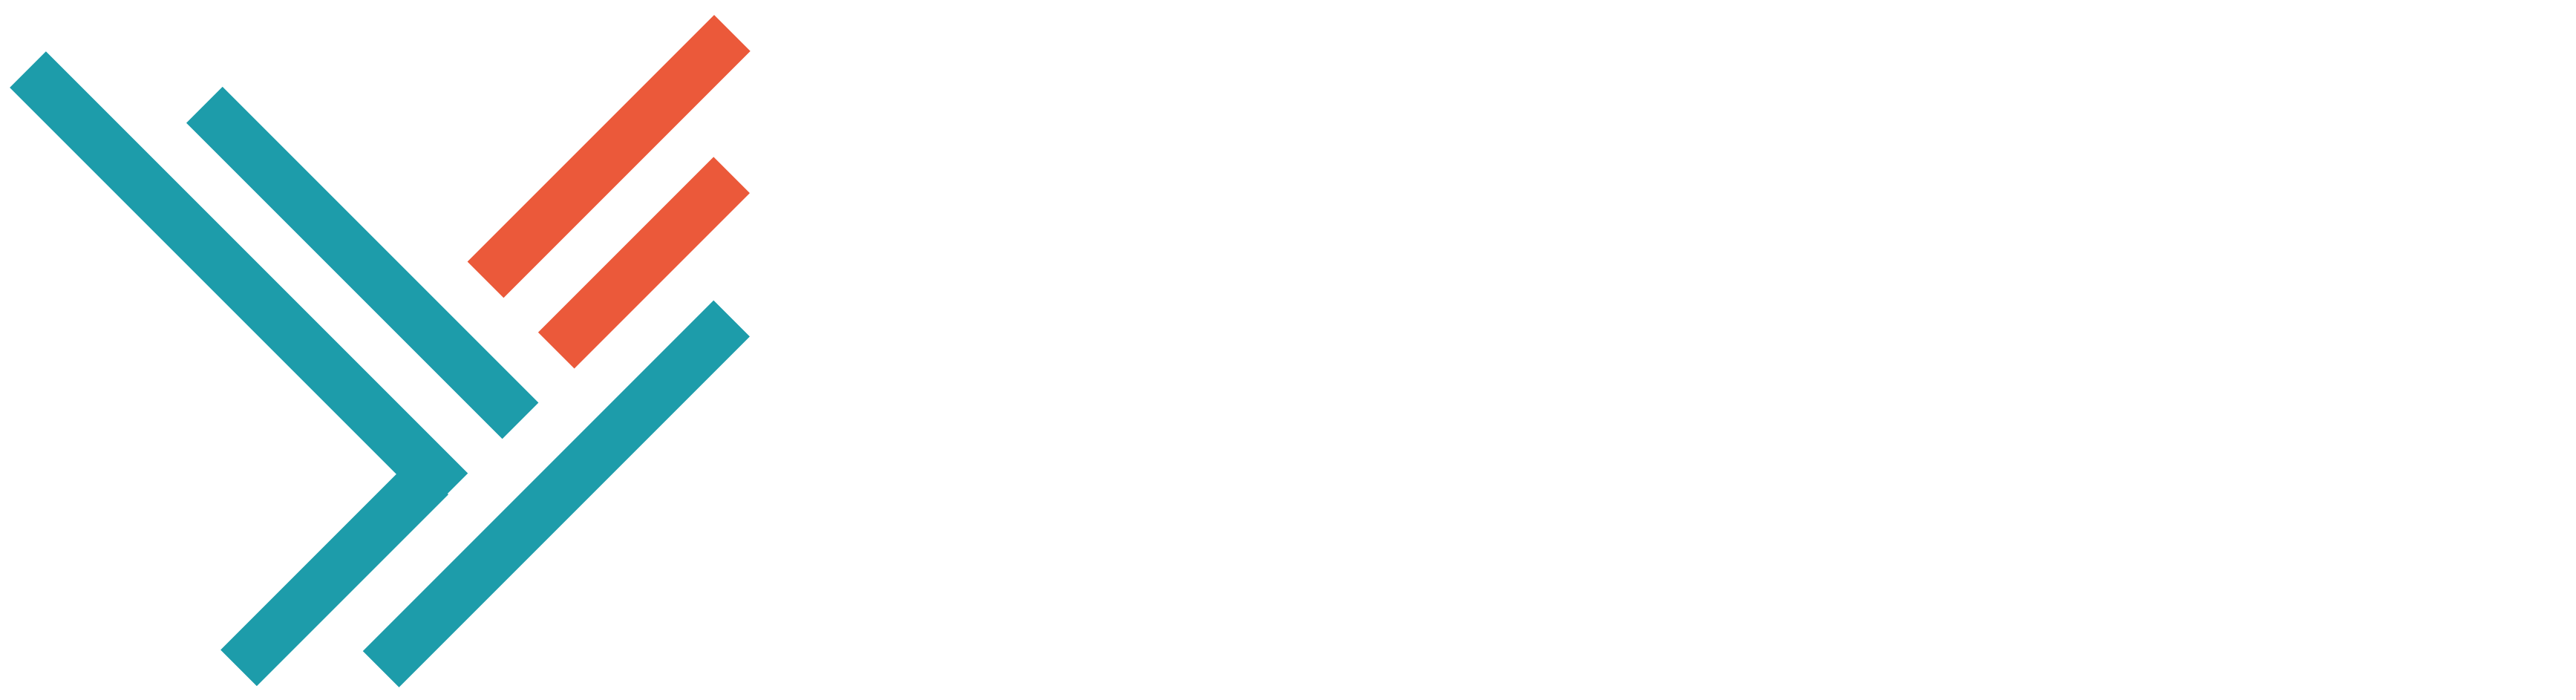 herone